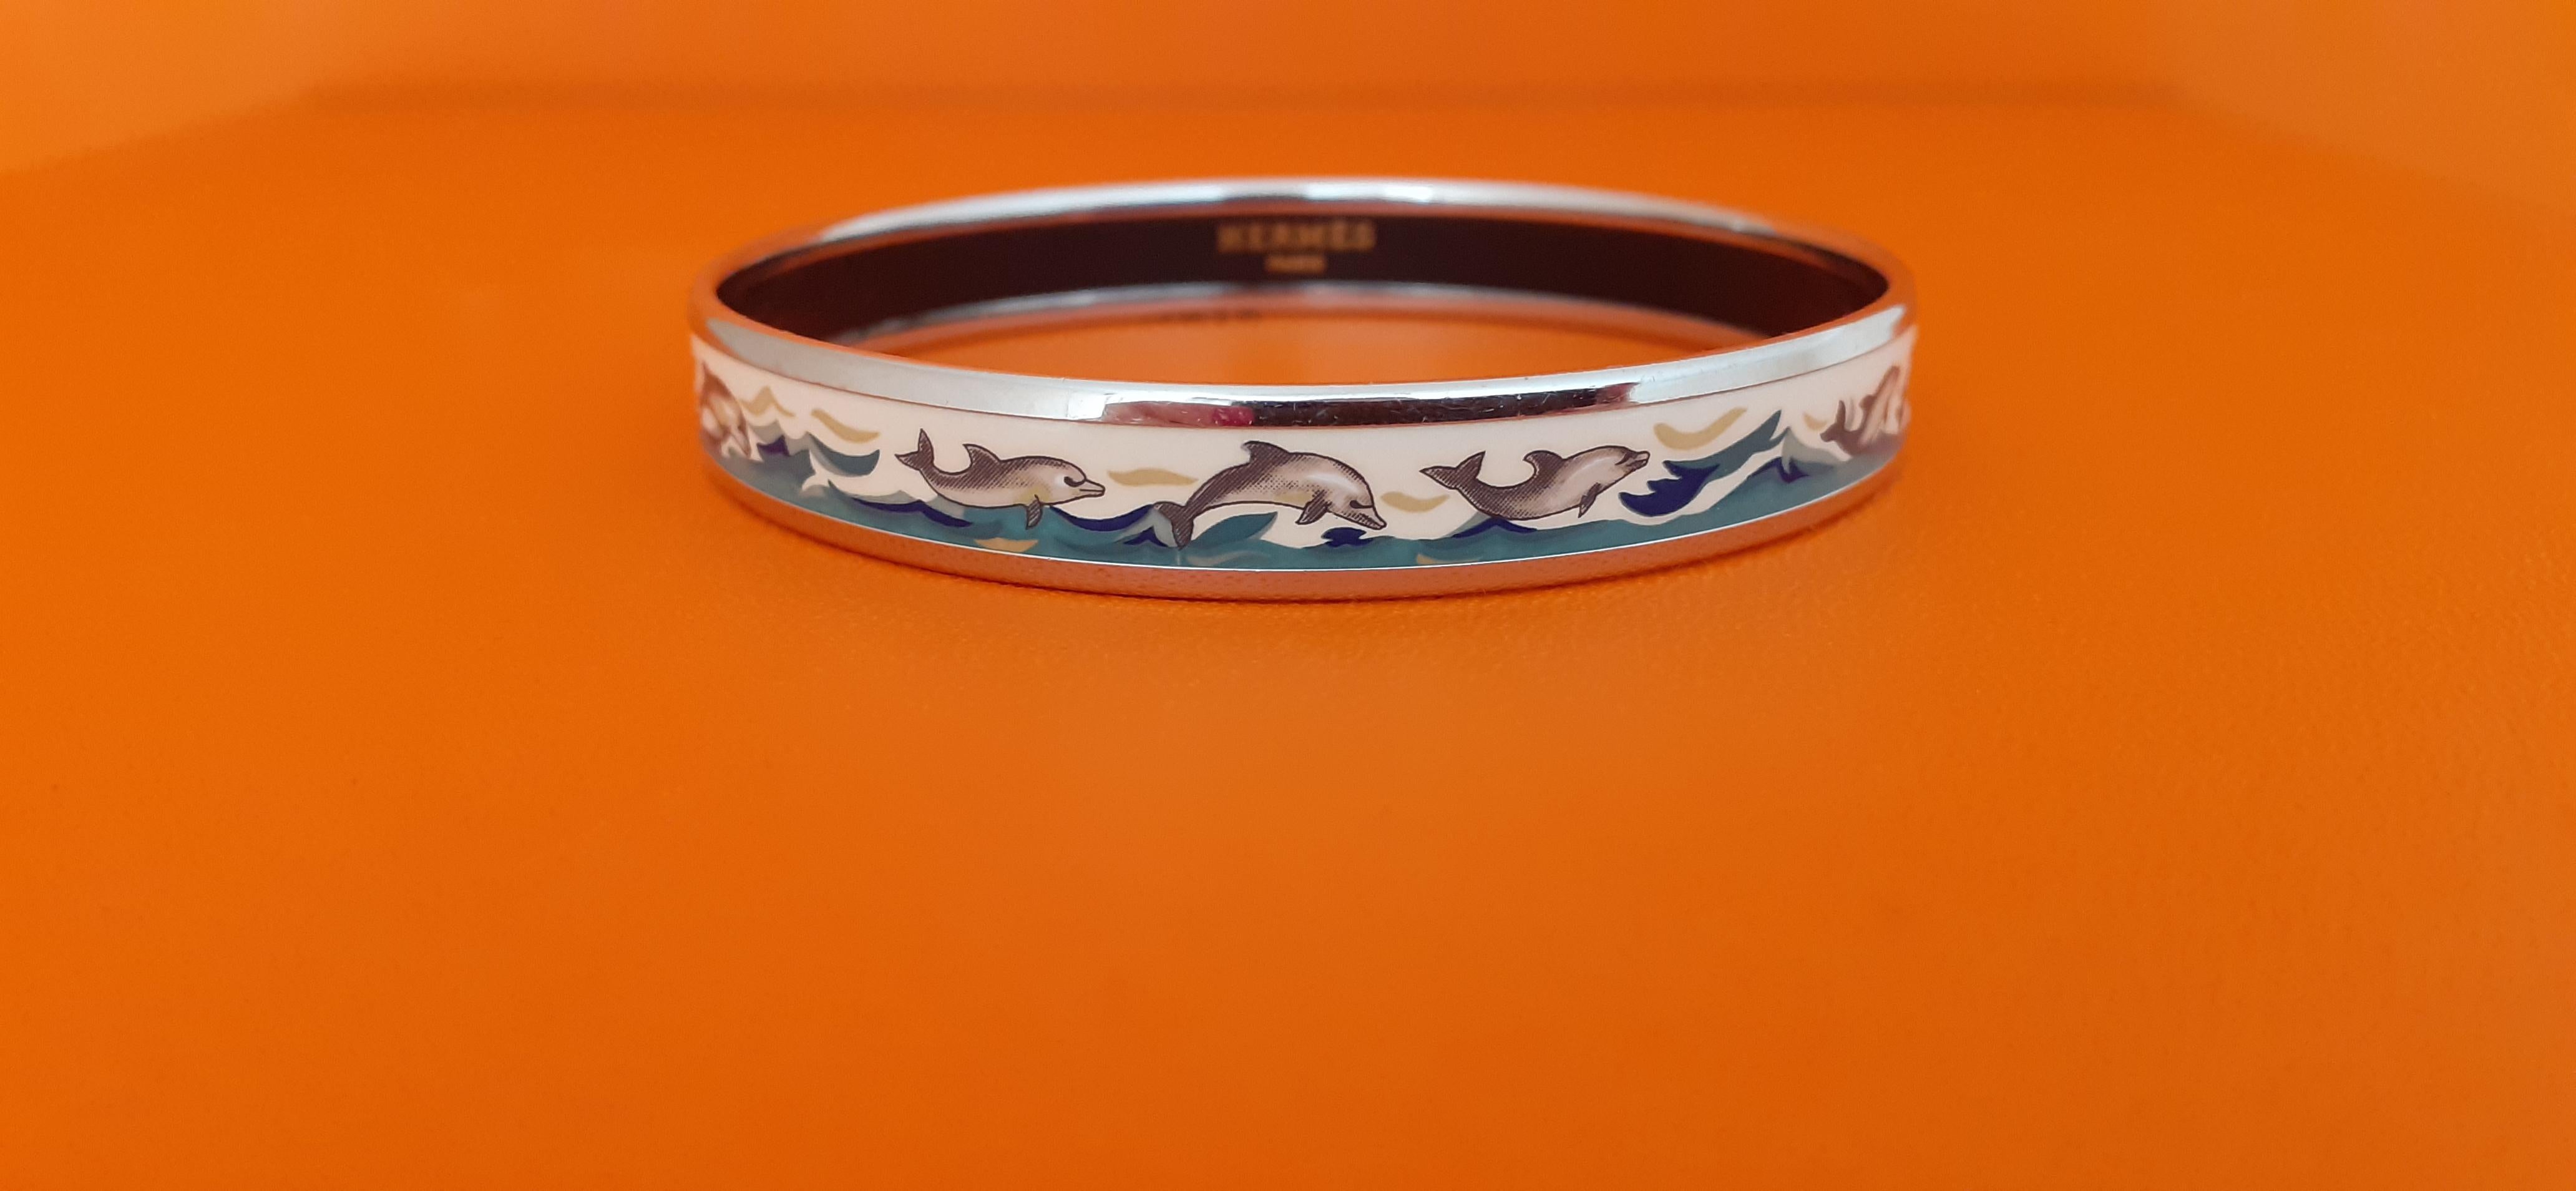 Schönes authentisches Hermès Armband

Drucken: Delfine in See

